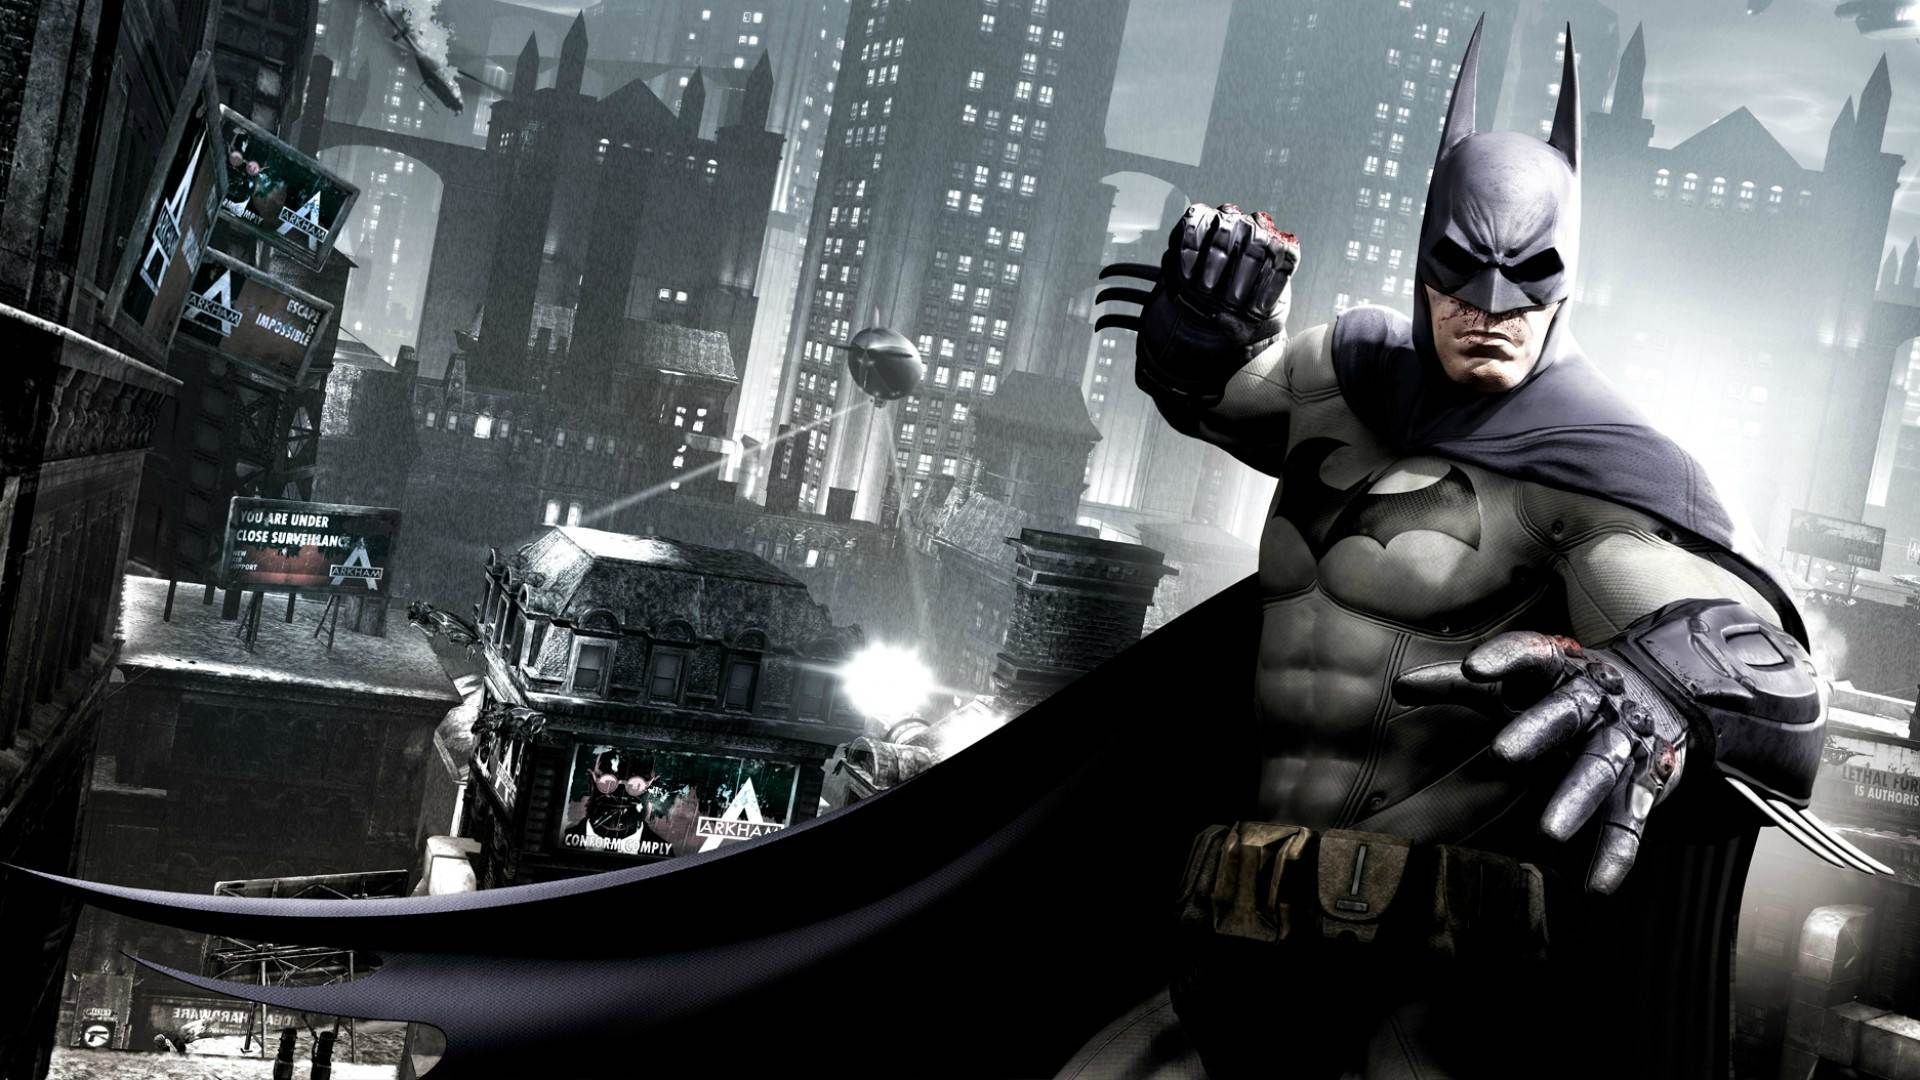 バットマンの壁紙,バットマン,アクションアドベンチャーゲーム,スーパーヒーロー,架空の人物,正義リーグ